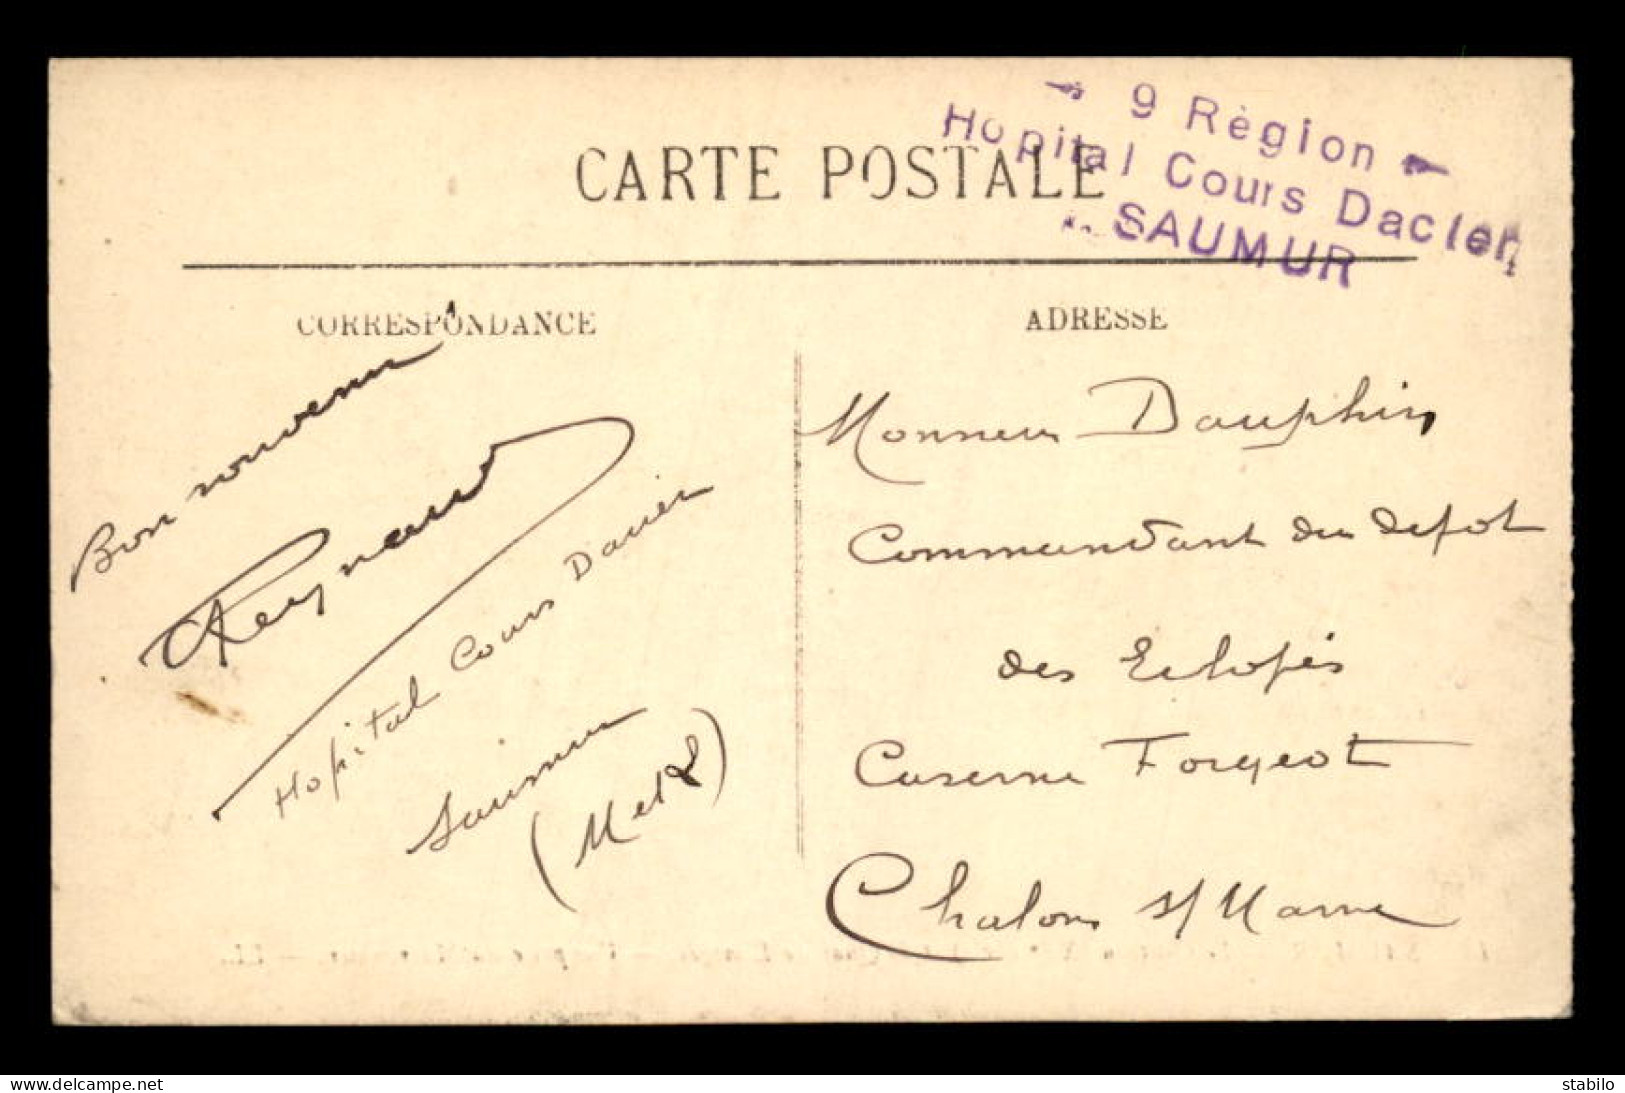 CACHET HOPITAL COURS DACIER - 9E REGION - SAUMUR (MAINE ET LOIRE) - Oorlog 1914-18